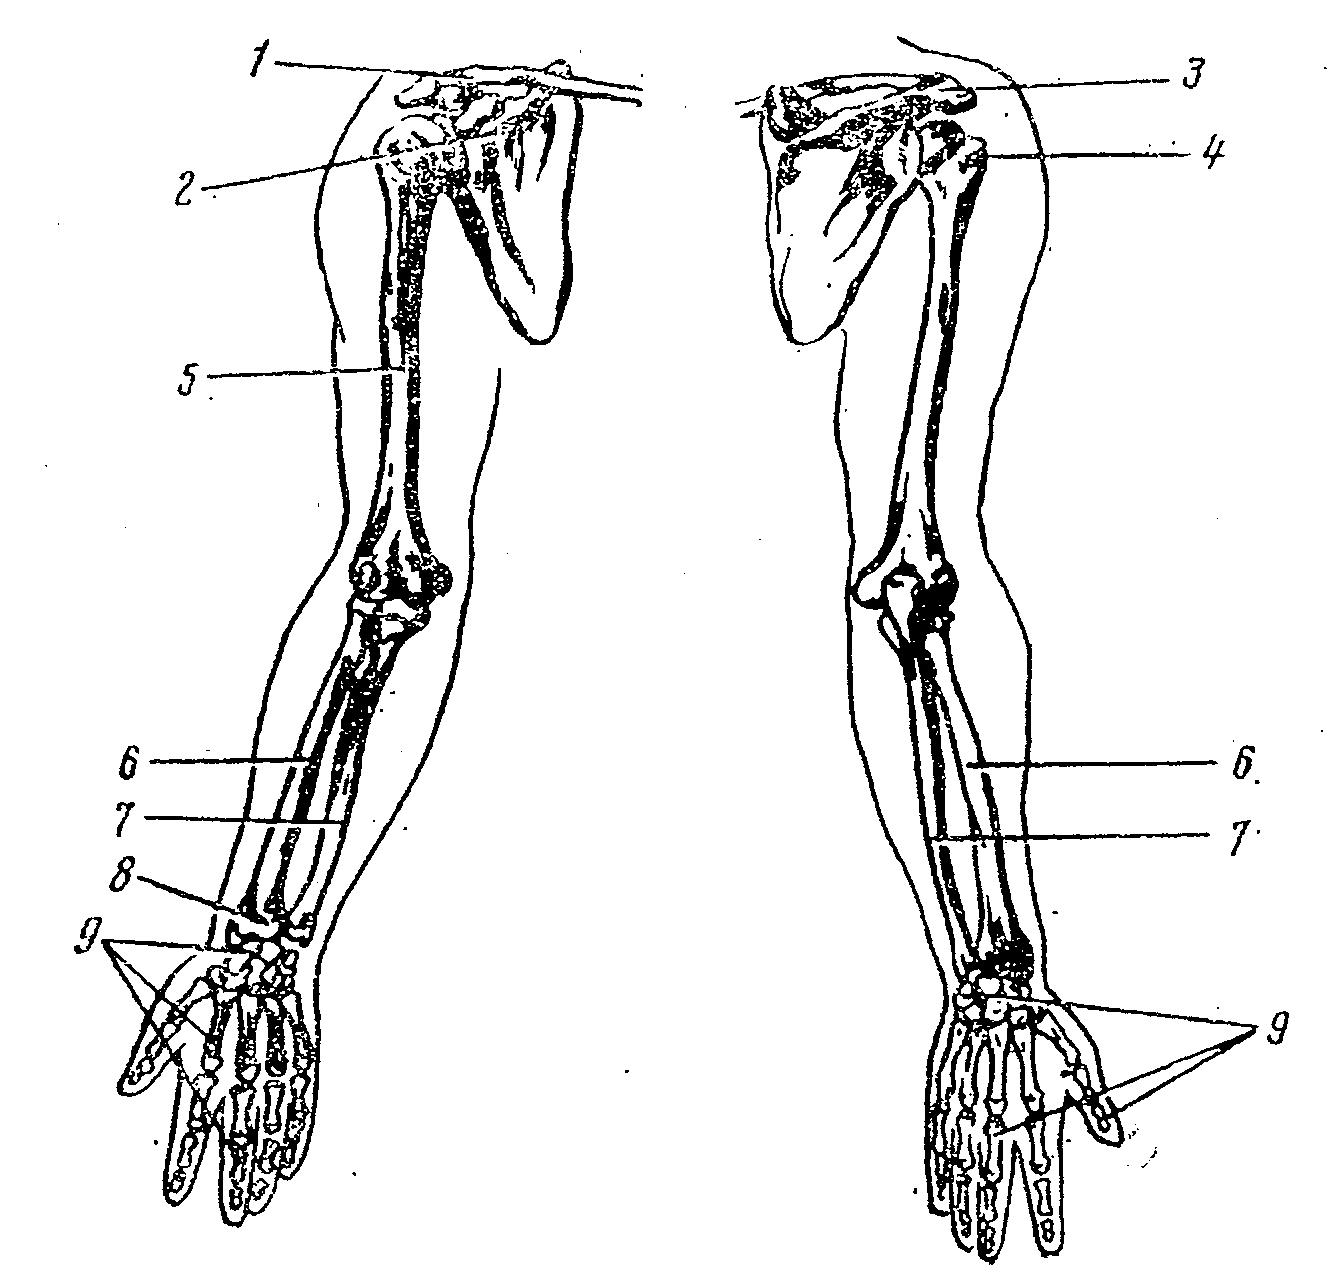 Скелет верхней конечности человека пояс конечностей. Плечевой пояс и скелет верхних конечностей. Скелет верхней конечности человека. Скелет конечностей верхняя конечность. Скелет верхней конечности человека схема.